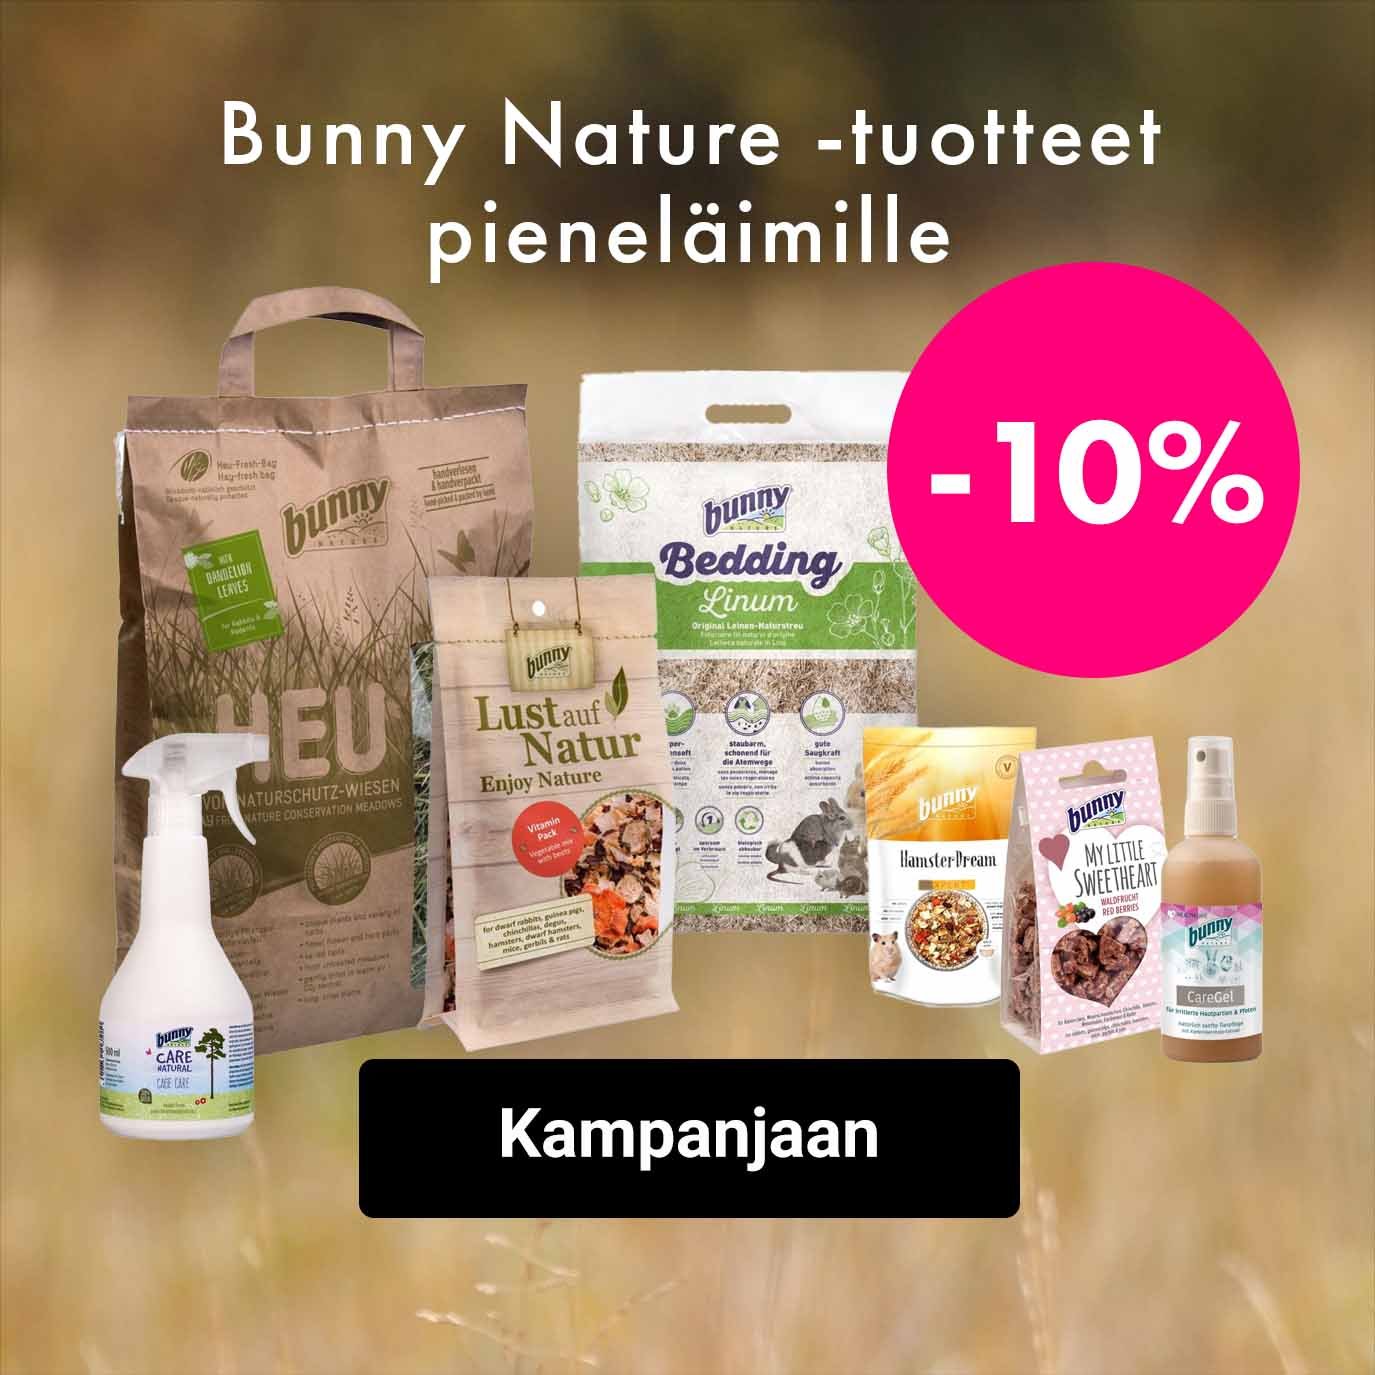 Bunny Nature tuotteet pieneläimille -10%